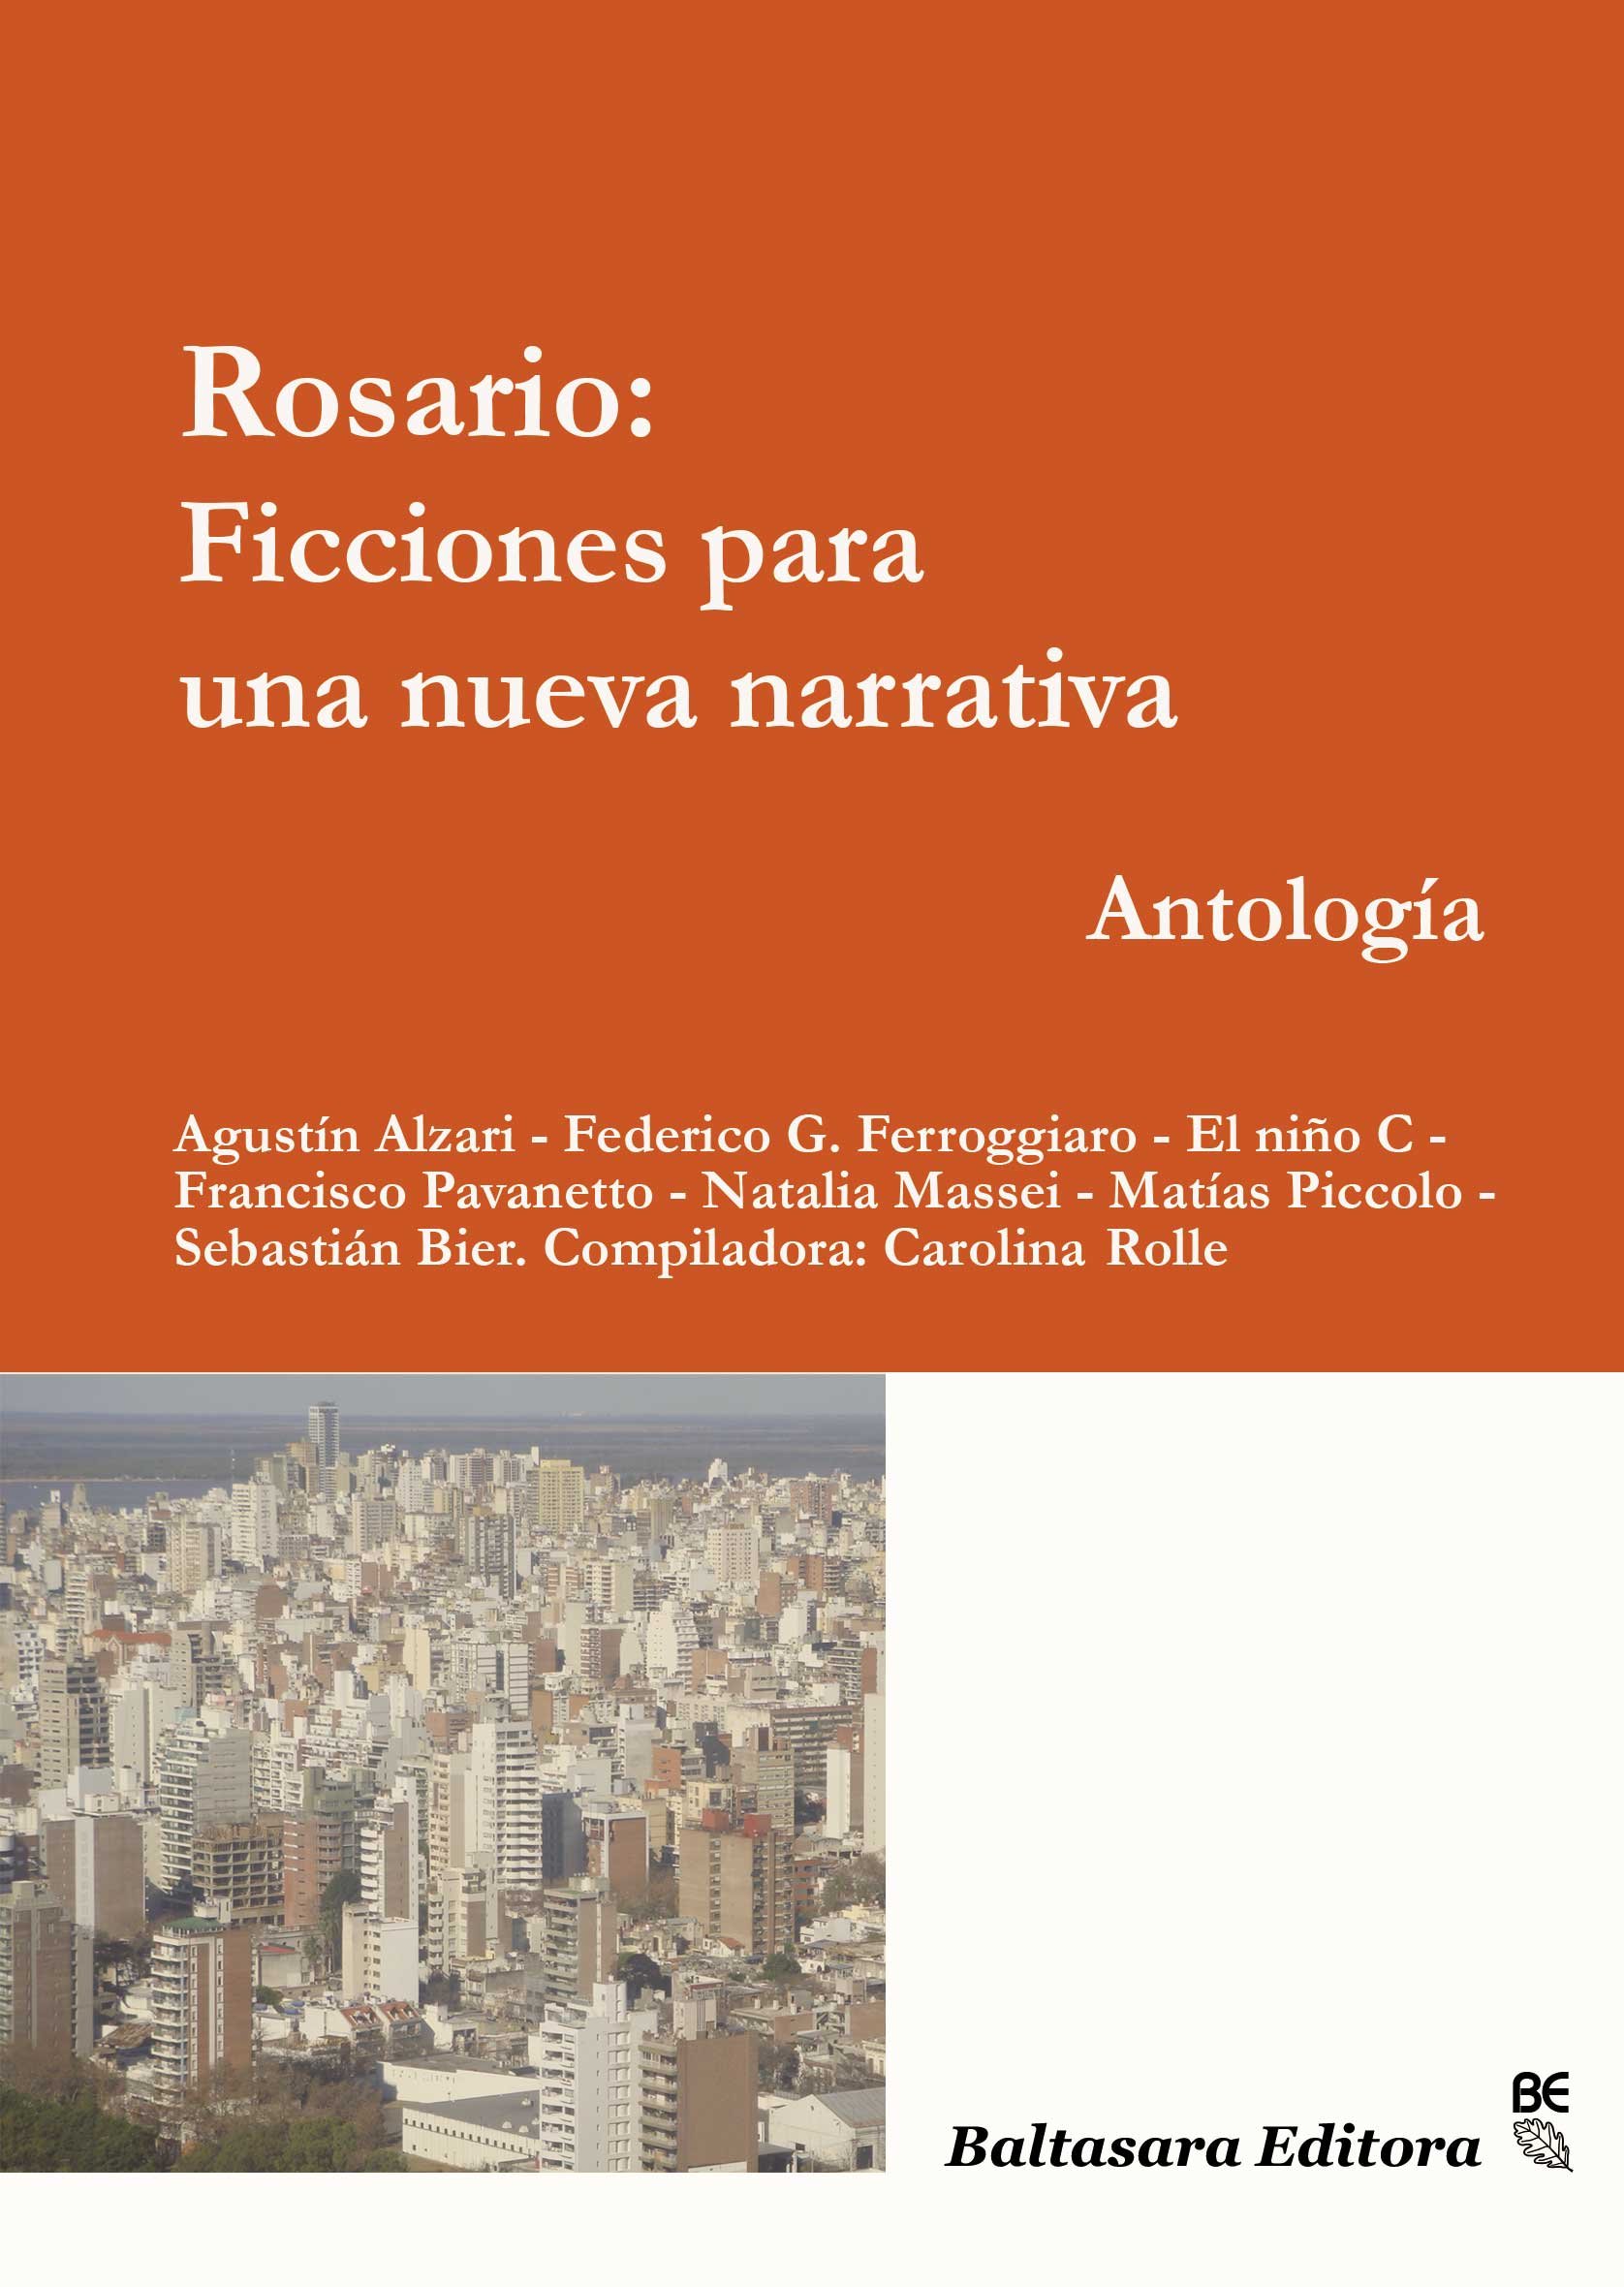 ROSARIO: Ficciones para una nueva narrativa - 2da. edición